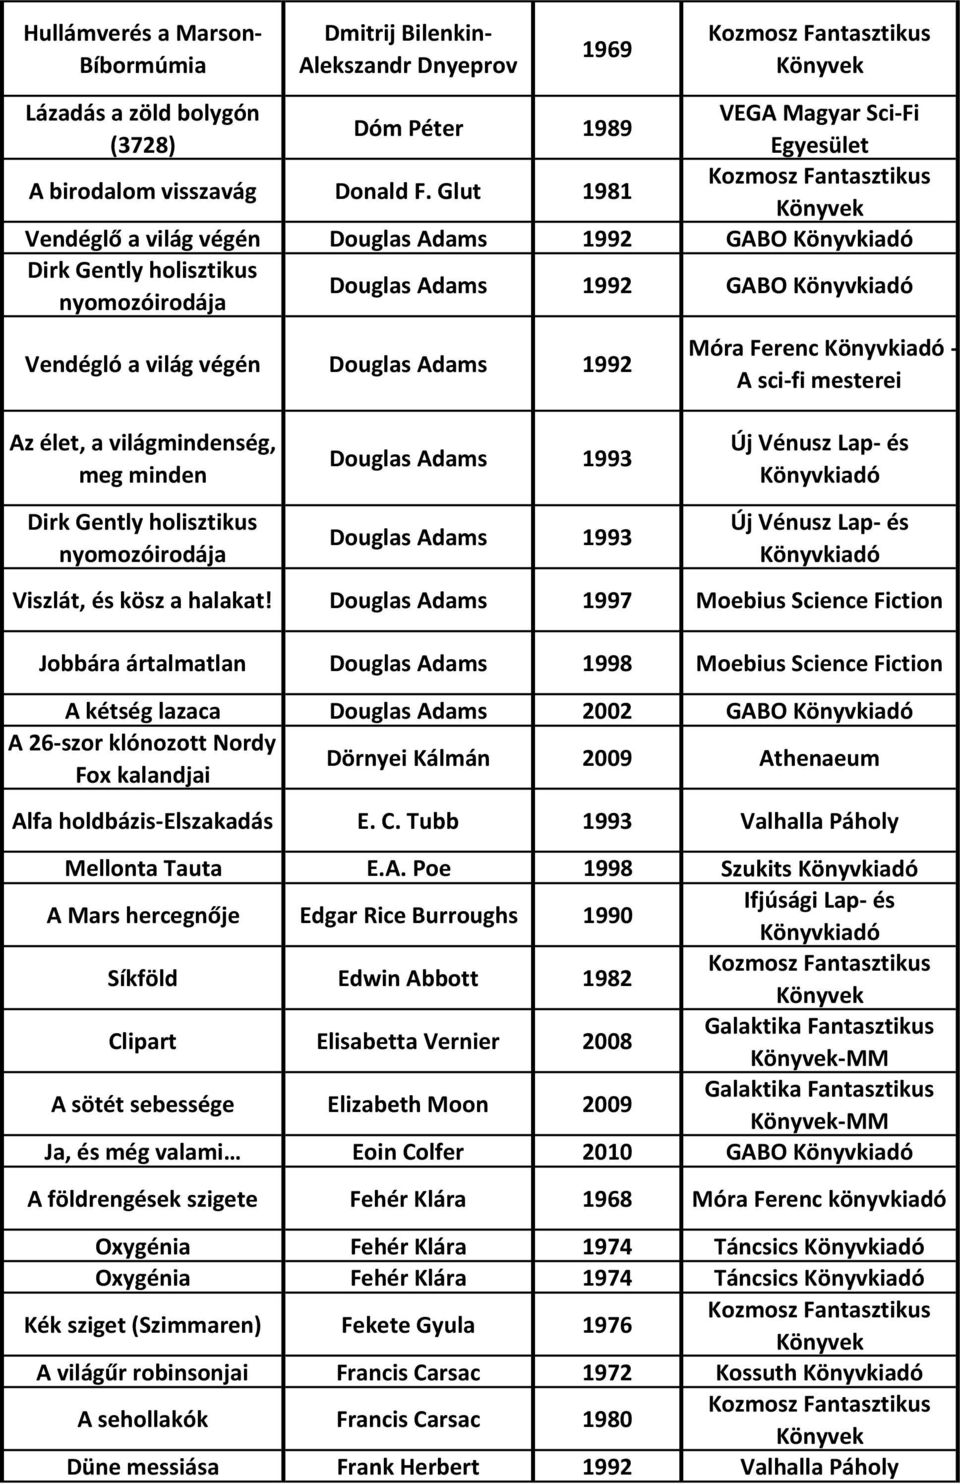 Könyvkiadó - A sci-fi mesterei Az élet, a világmindenség, meg minden Douglas Adams 1993 Új Vénusz Lap- és Könyvkiadó Dirk Gently holisztikus nyomozóirodája Douglas Adams 1993 Új Vénusz Lap- és